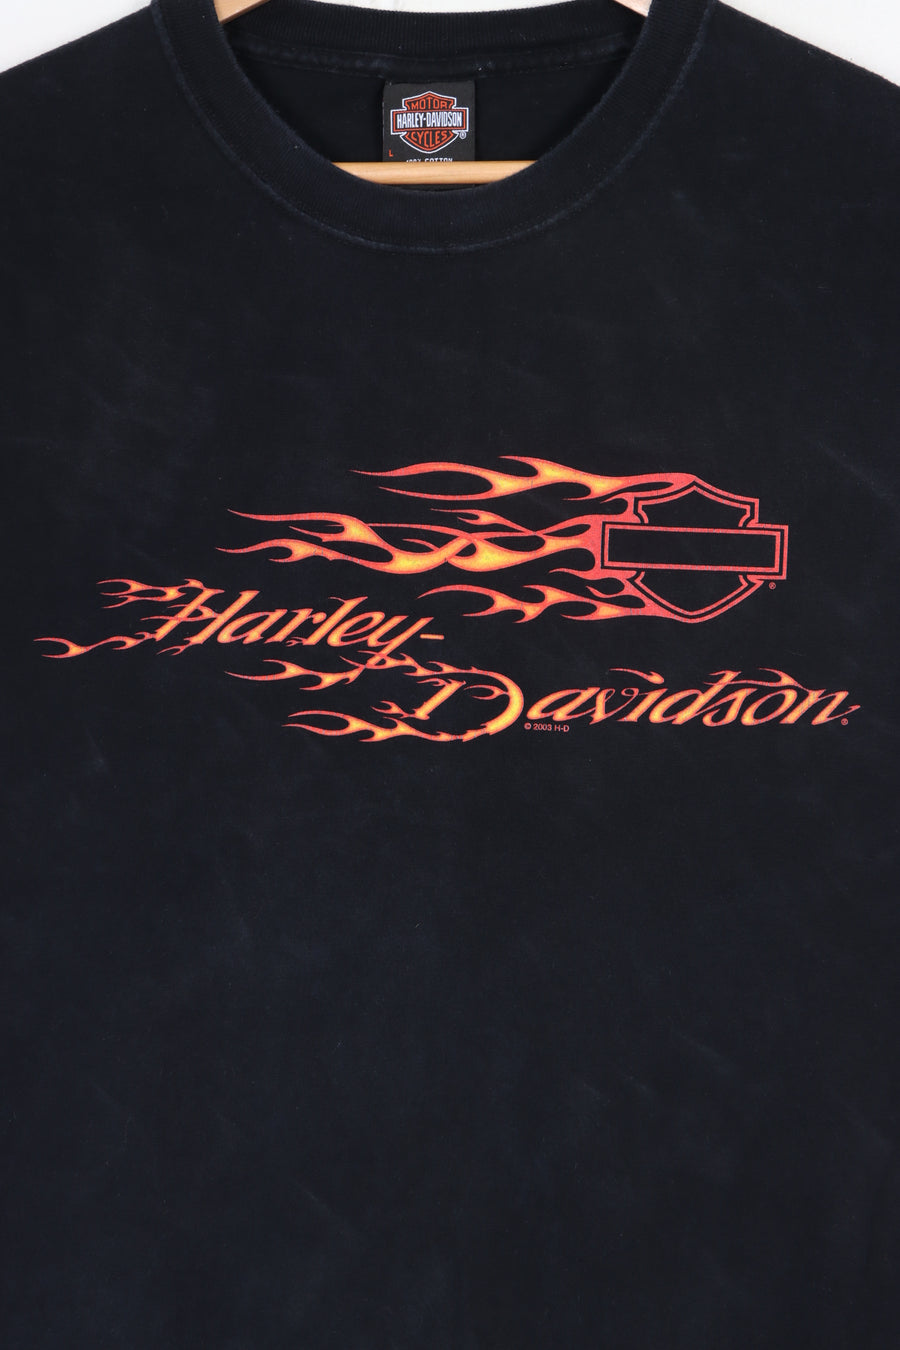 HARLEY DAVIDSON Vallejo Bike Wings Front Back T-Shirt (L)